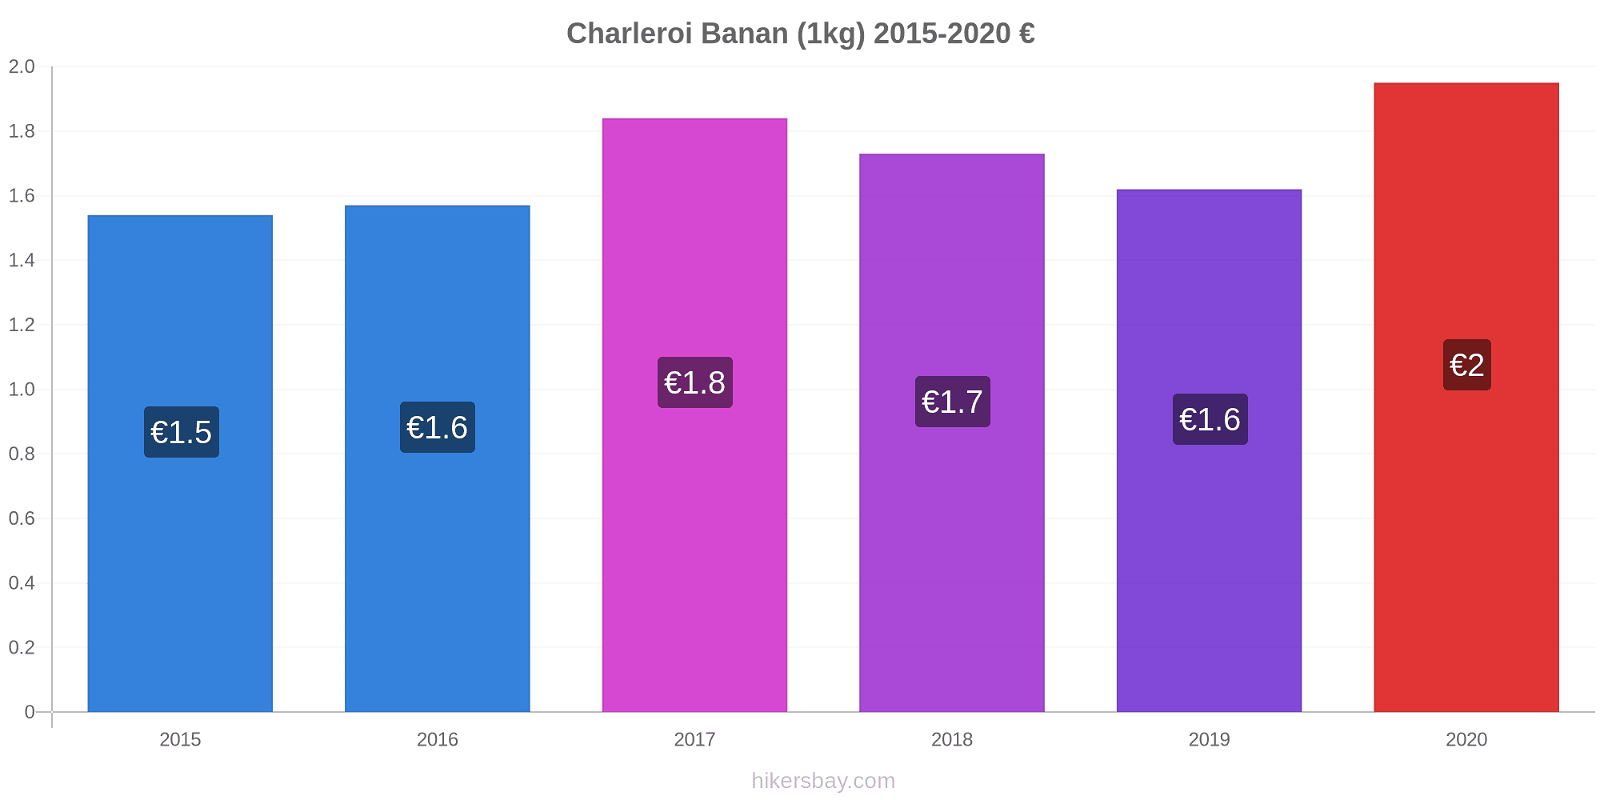 Charleroi prisförändringar Banan (1kg) hikersbay.com